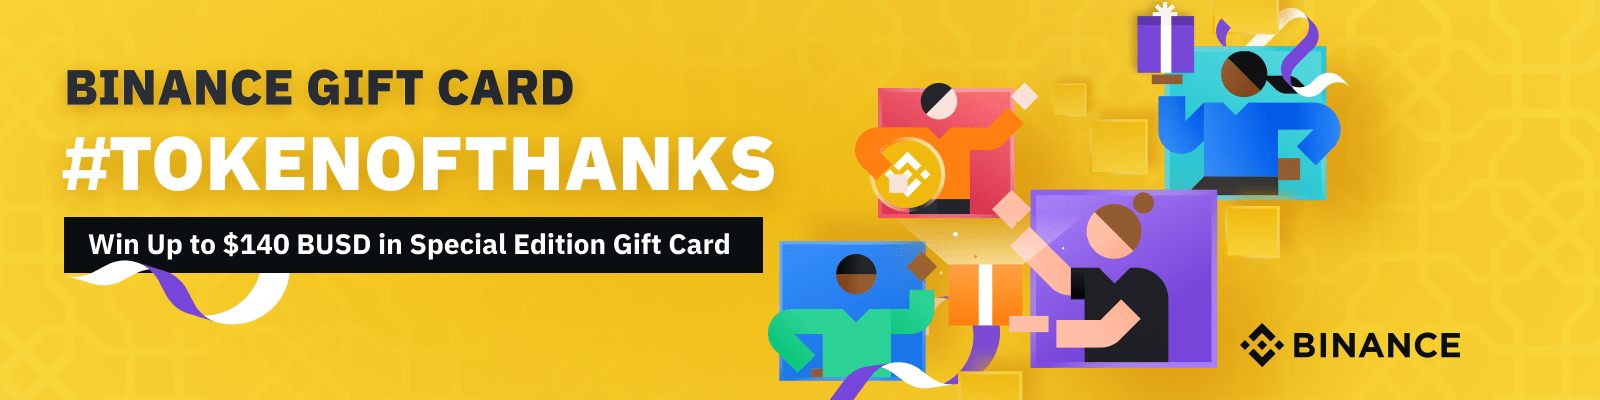 Thẻ quà tặng Binance #TokenOfThanks Khuyến mãi: Kiếm tới $ 140 BUSD trong Thẻ quà tặng phiên bản đặc biệt 3